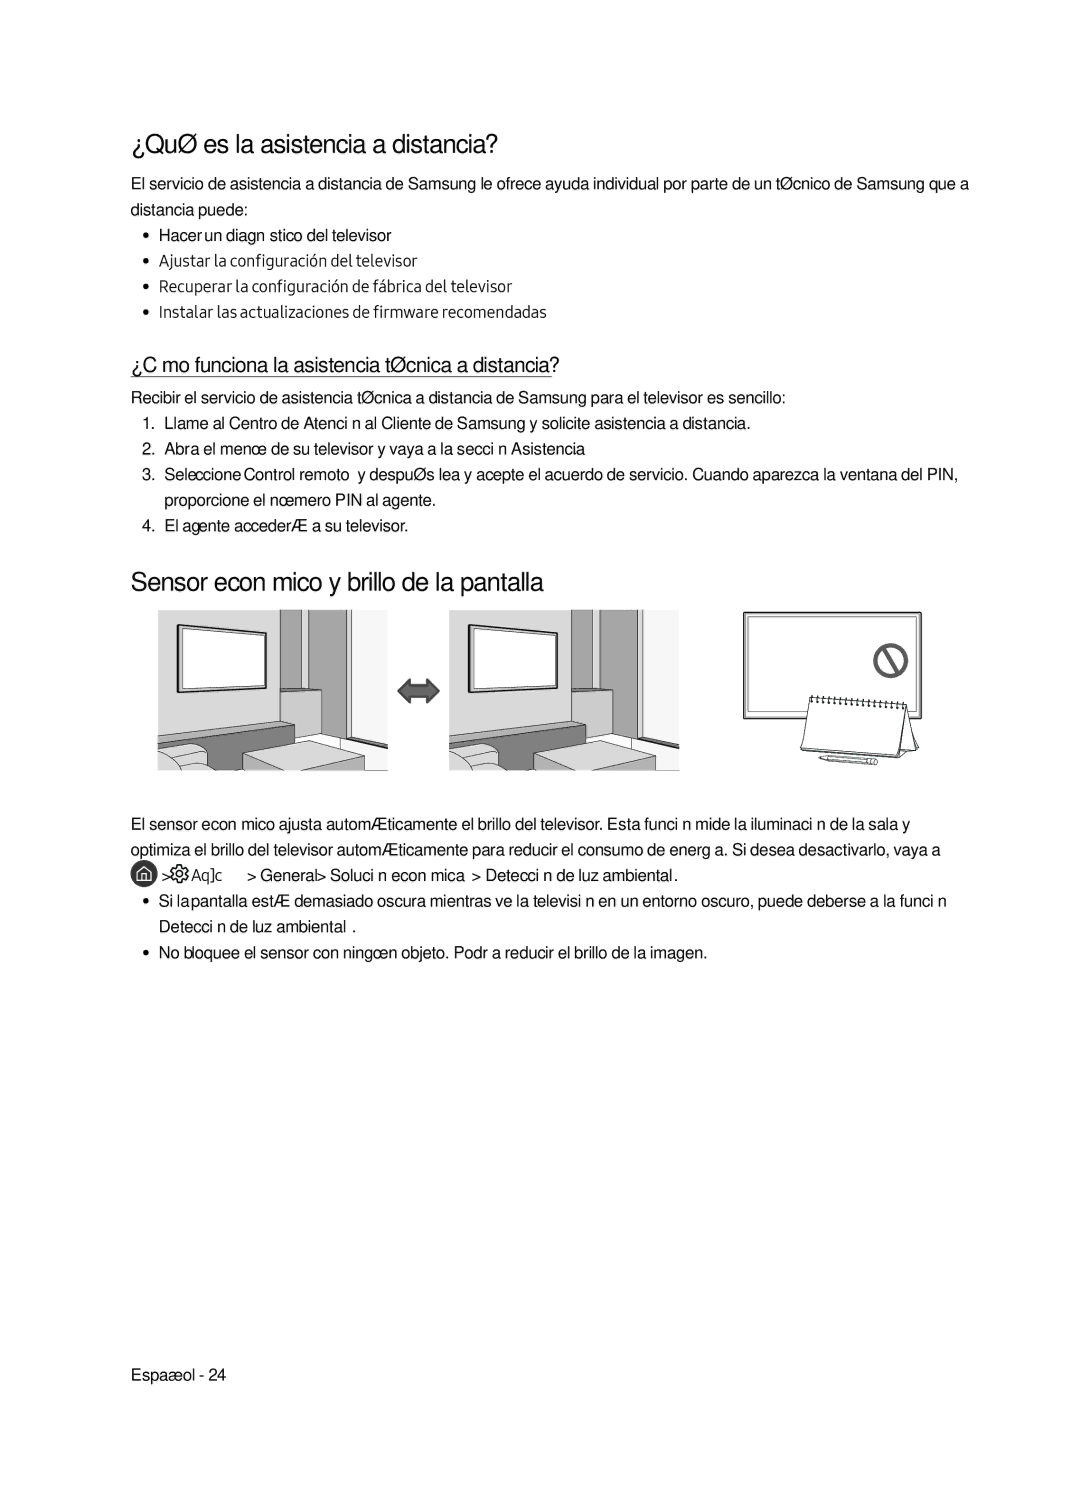 Samsung UE43LS003AUXZG, UE43LS003AUXXC manual ¿Qué es la asistencia a distancia?, Sensor económico y brillo de la pantalla 